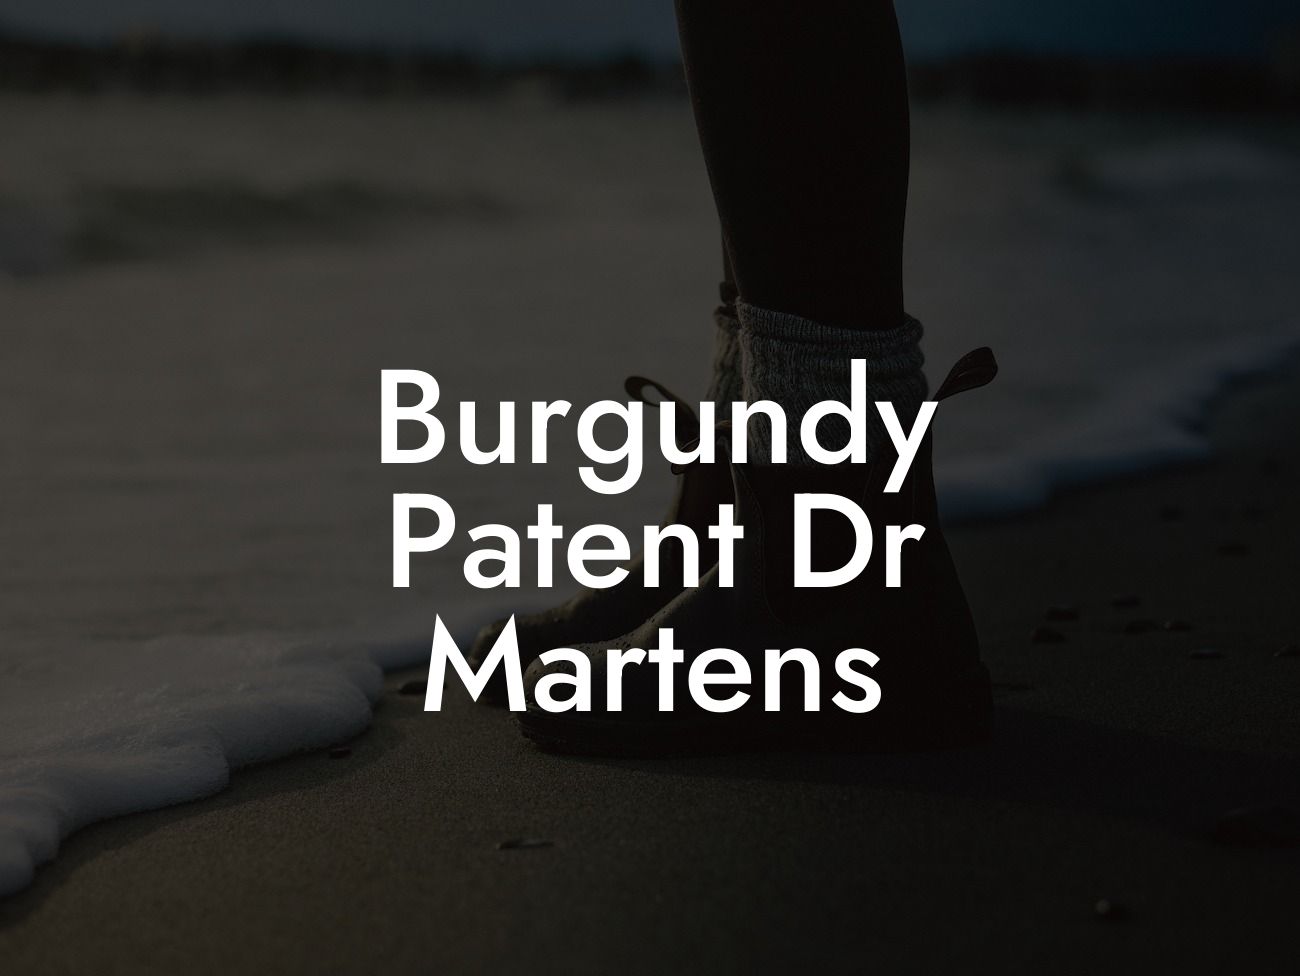 Burgundy Patent Dr Martens